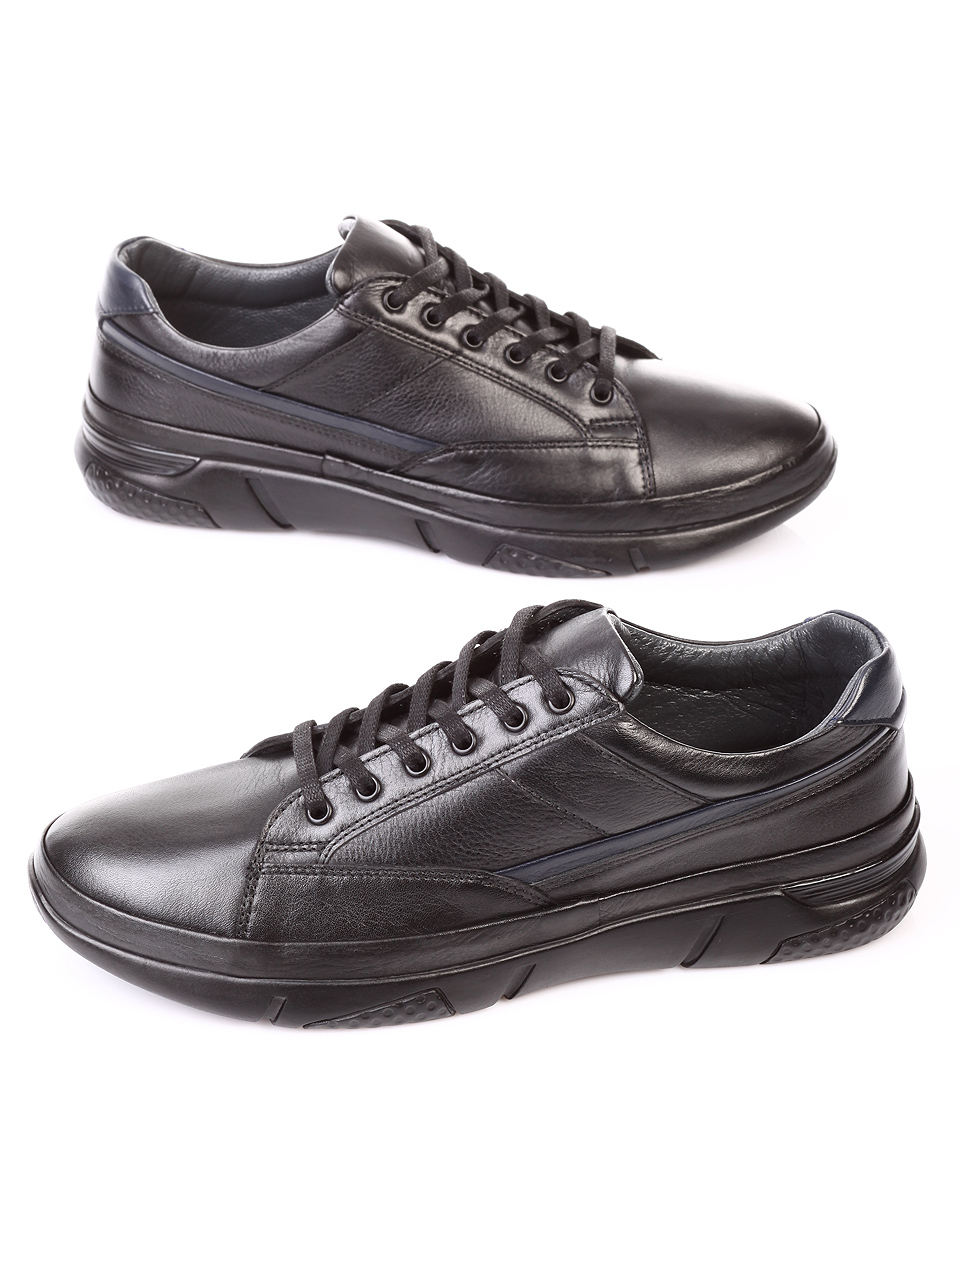 Ежедневни мъжки обувки от естествена кожа 7AT-181102 black